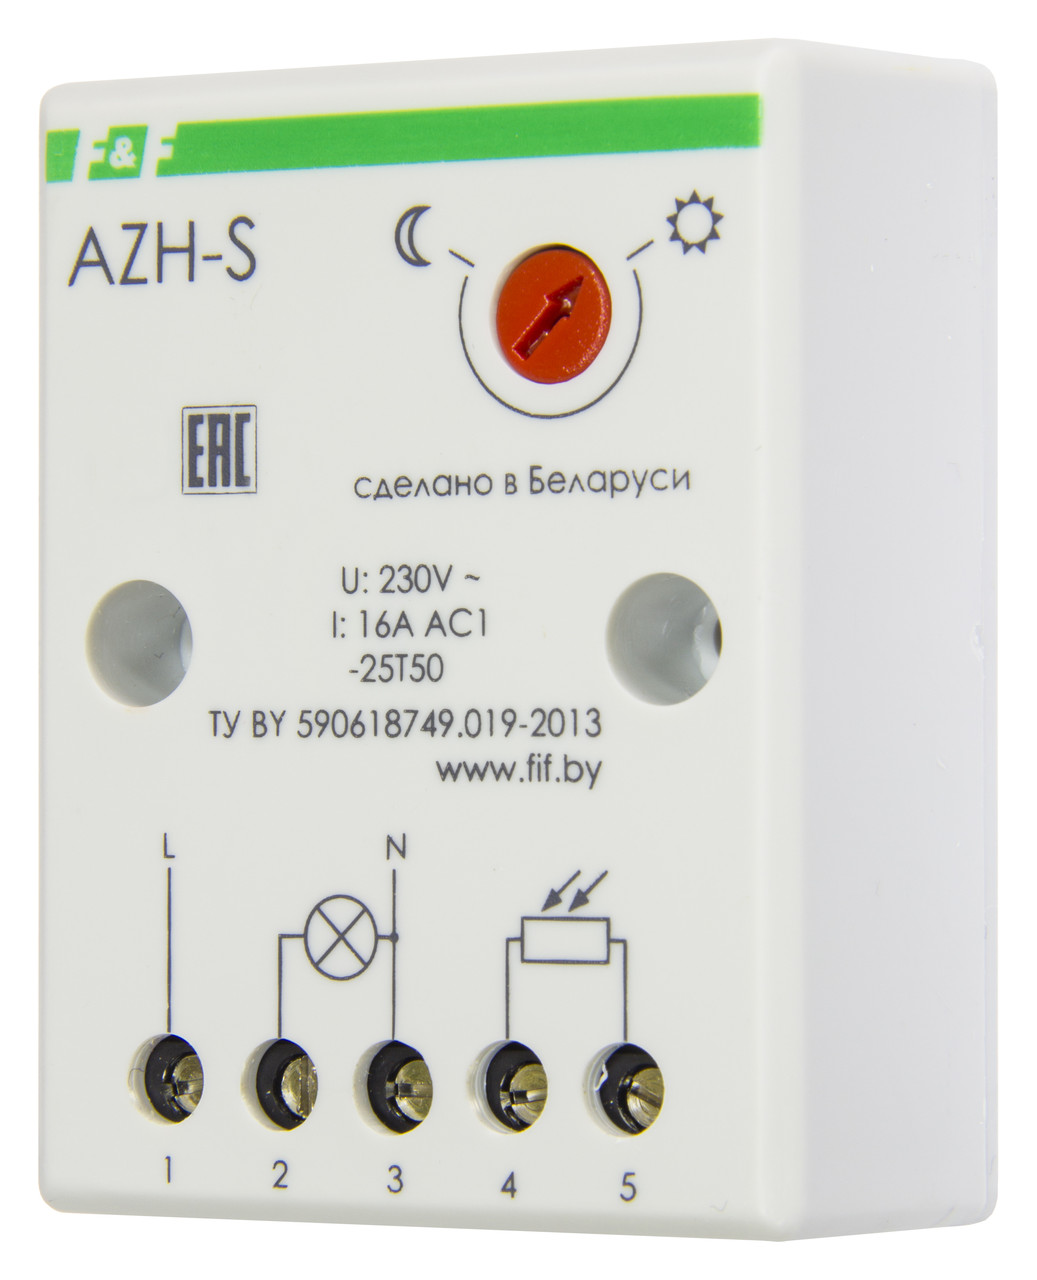 AZH-S Фотореле (автоматы светочувствительные), Выносной фотодатчик. Максимальный ток нагрузки - 16 А.